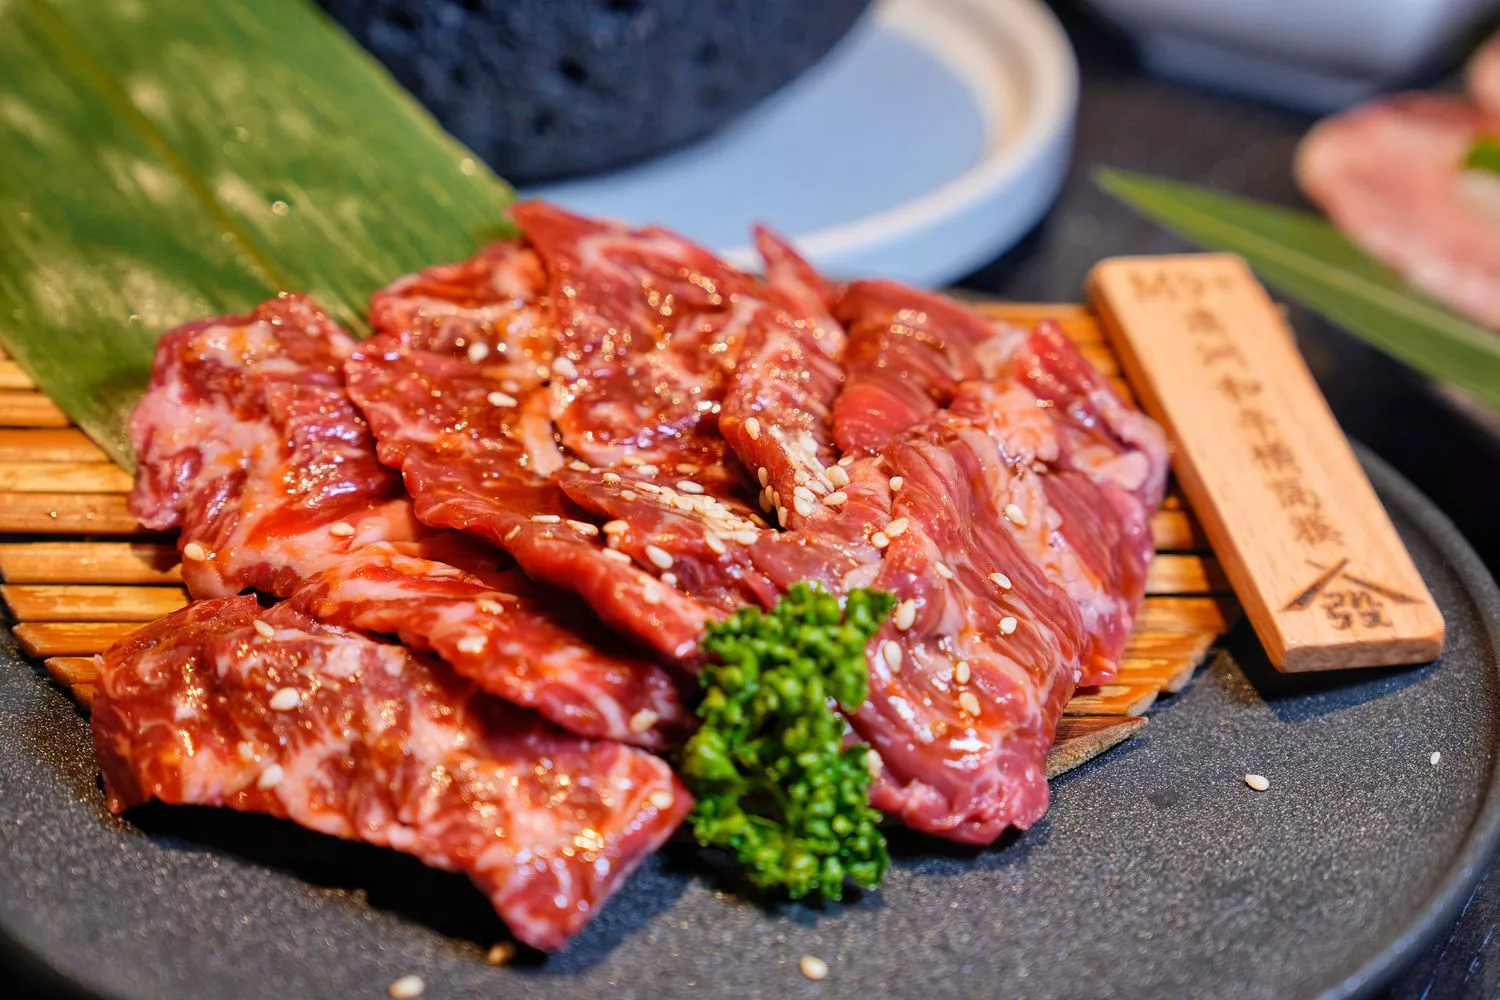 【東區日式燒肉】發肉燒肉餐酒，Google評價 4.9 顆星人氣推薦，慶生聚餐嗨不停! @混血珊莎的奇幻旅程